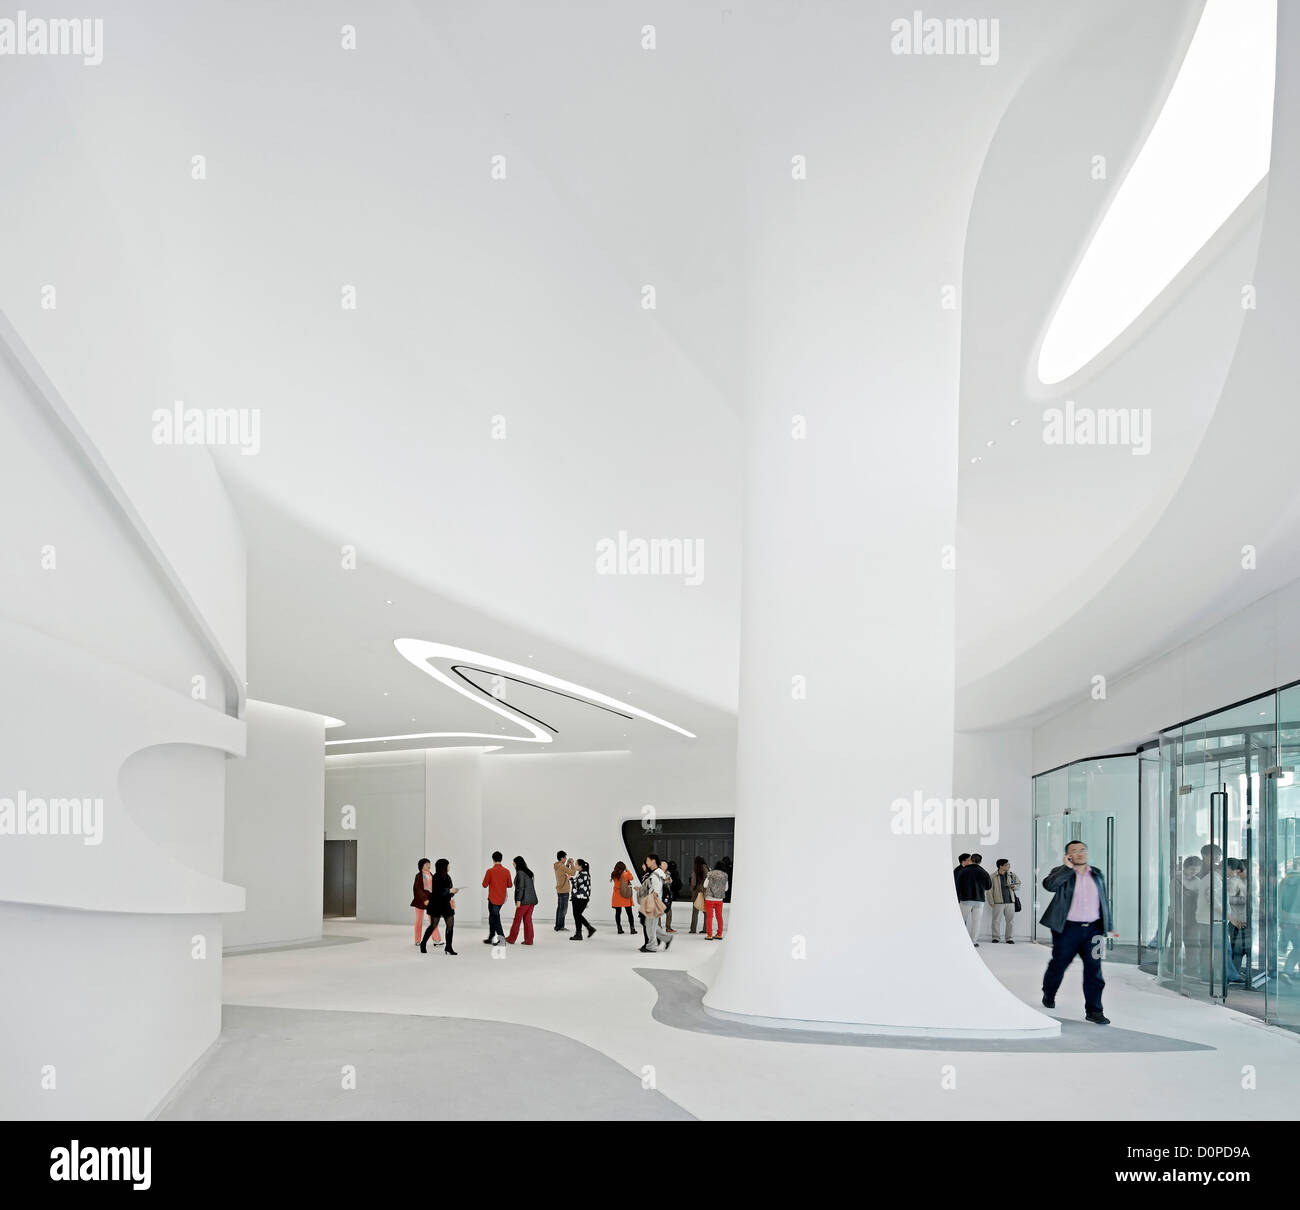 Galaxy Soho, Beijing, Chine. Architecte : Zaha Hadid Architects, 2012. L'atrium d'entrée avec piliers sculpturaux. Banque D'Images